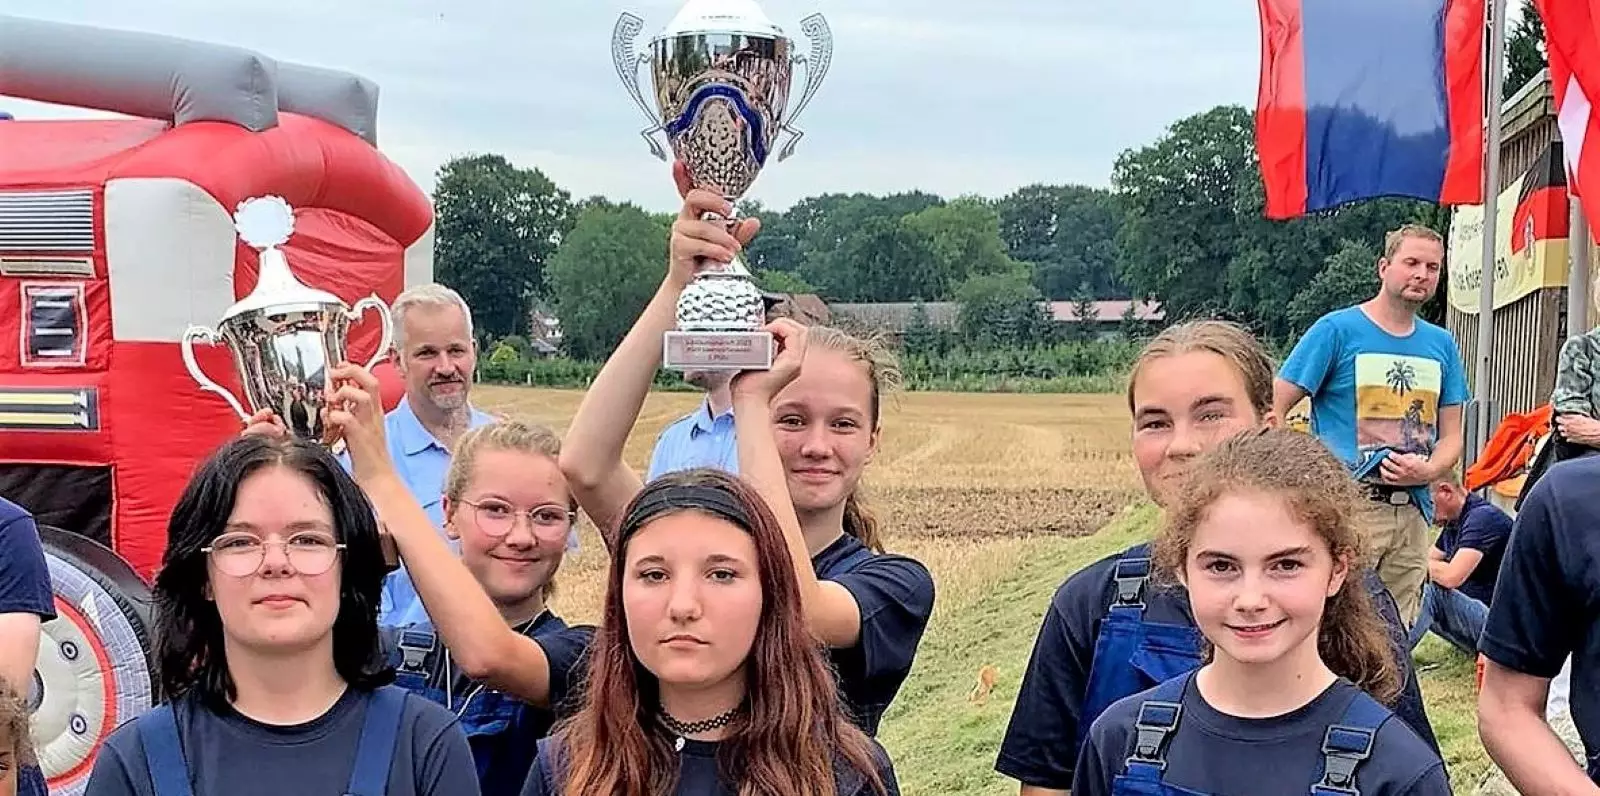 Jubel nach dem Wettkampf: Mädchen-Team aus Leversen holte sich den Pokal. Foto: Feuerwehr